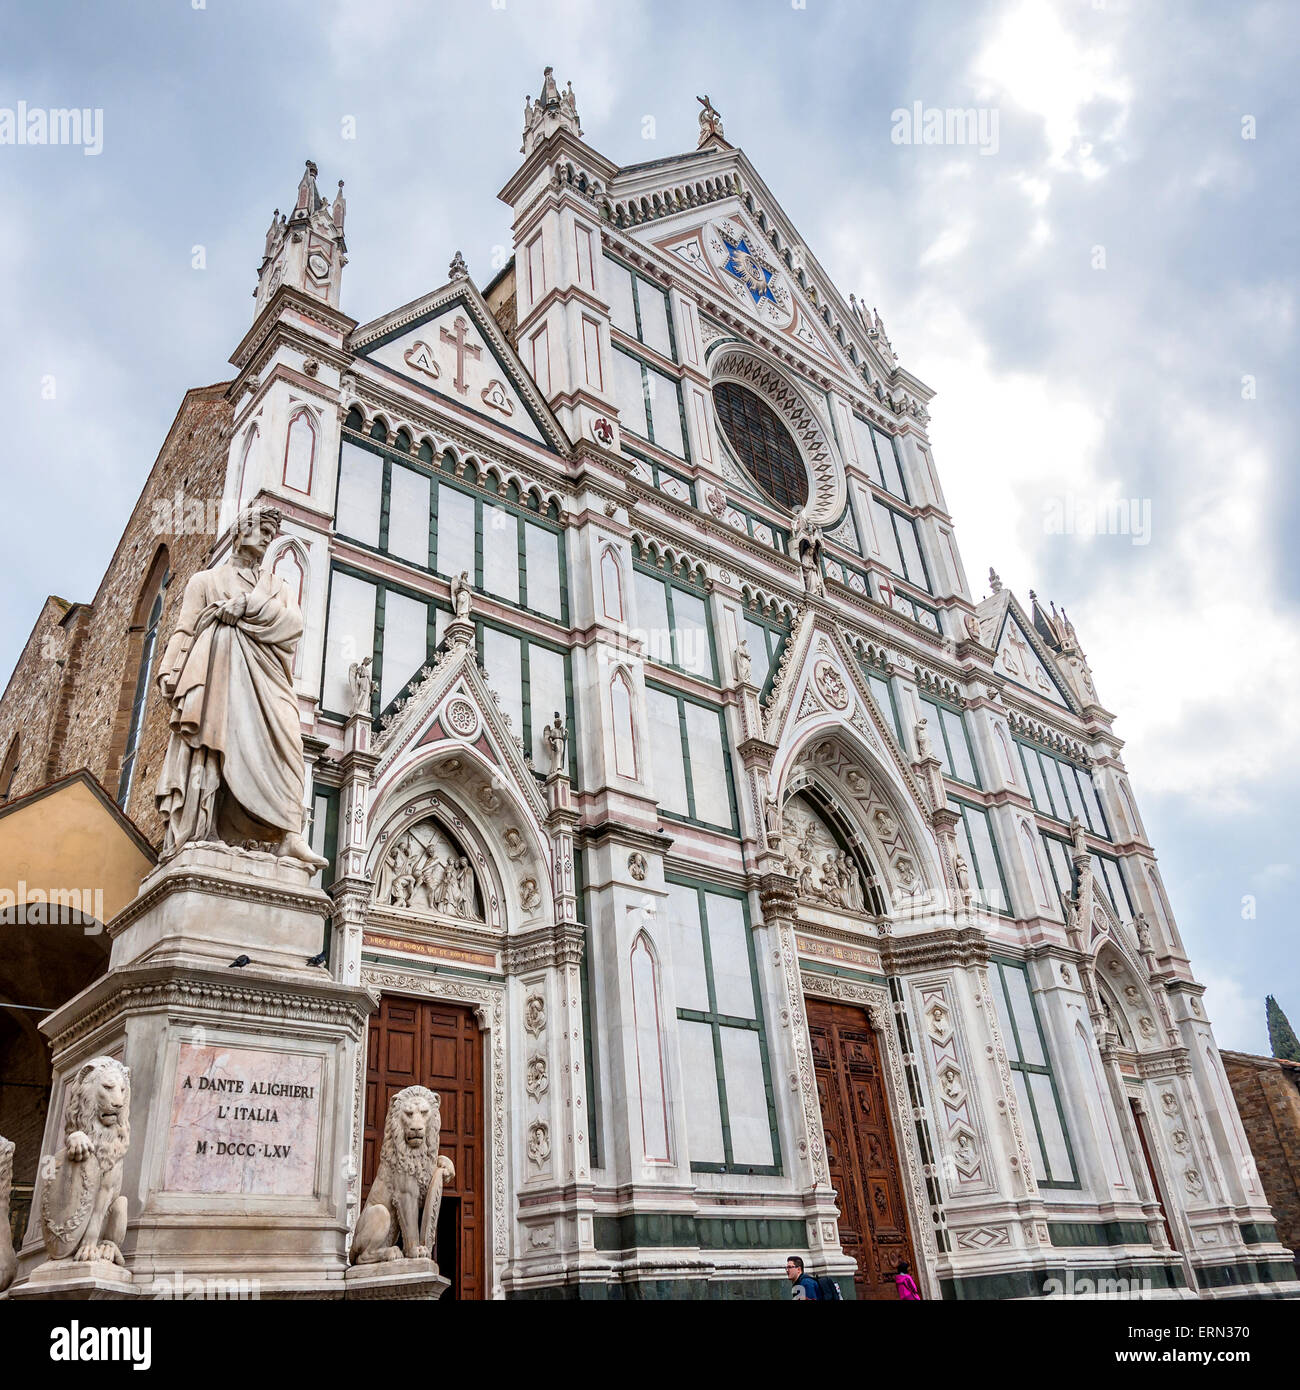 Florenz, Italien - 22. März 2014: Tagesansicht Basilica di Santa Croce (Heilig Kreuz Basilika), mit Dante-Statue auf der linken Seite Stockfoto